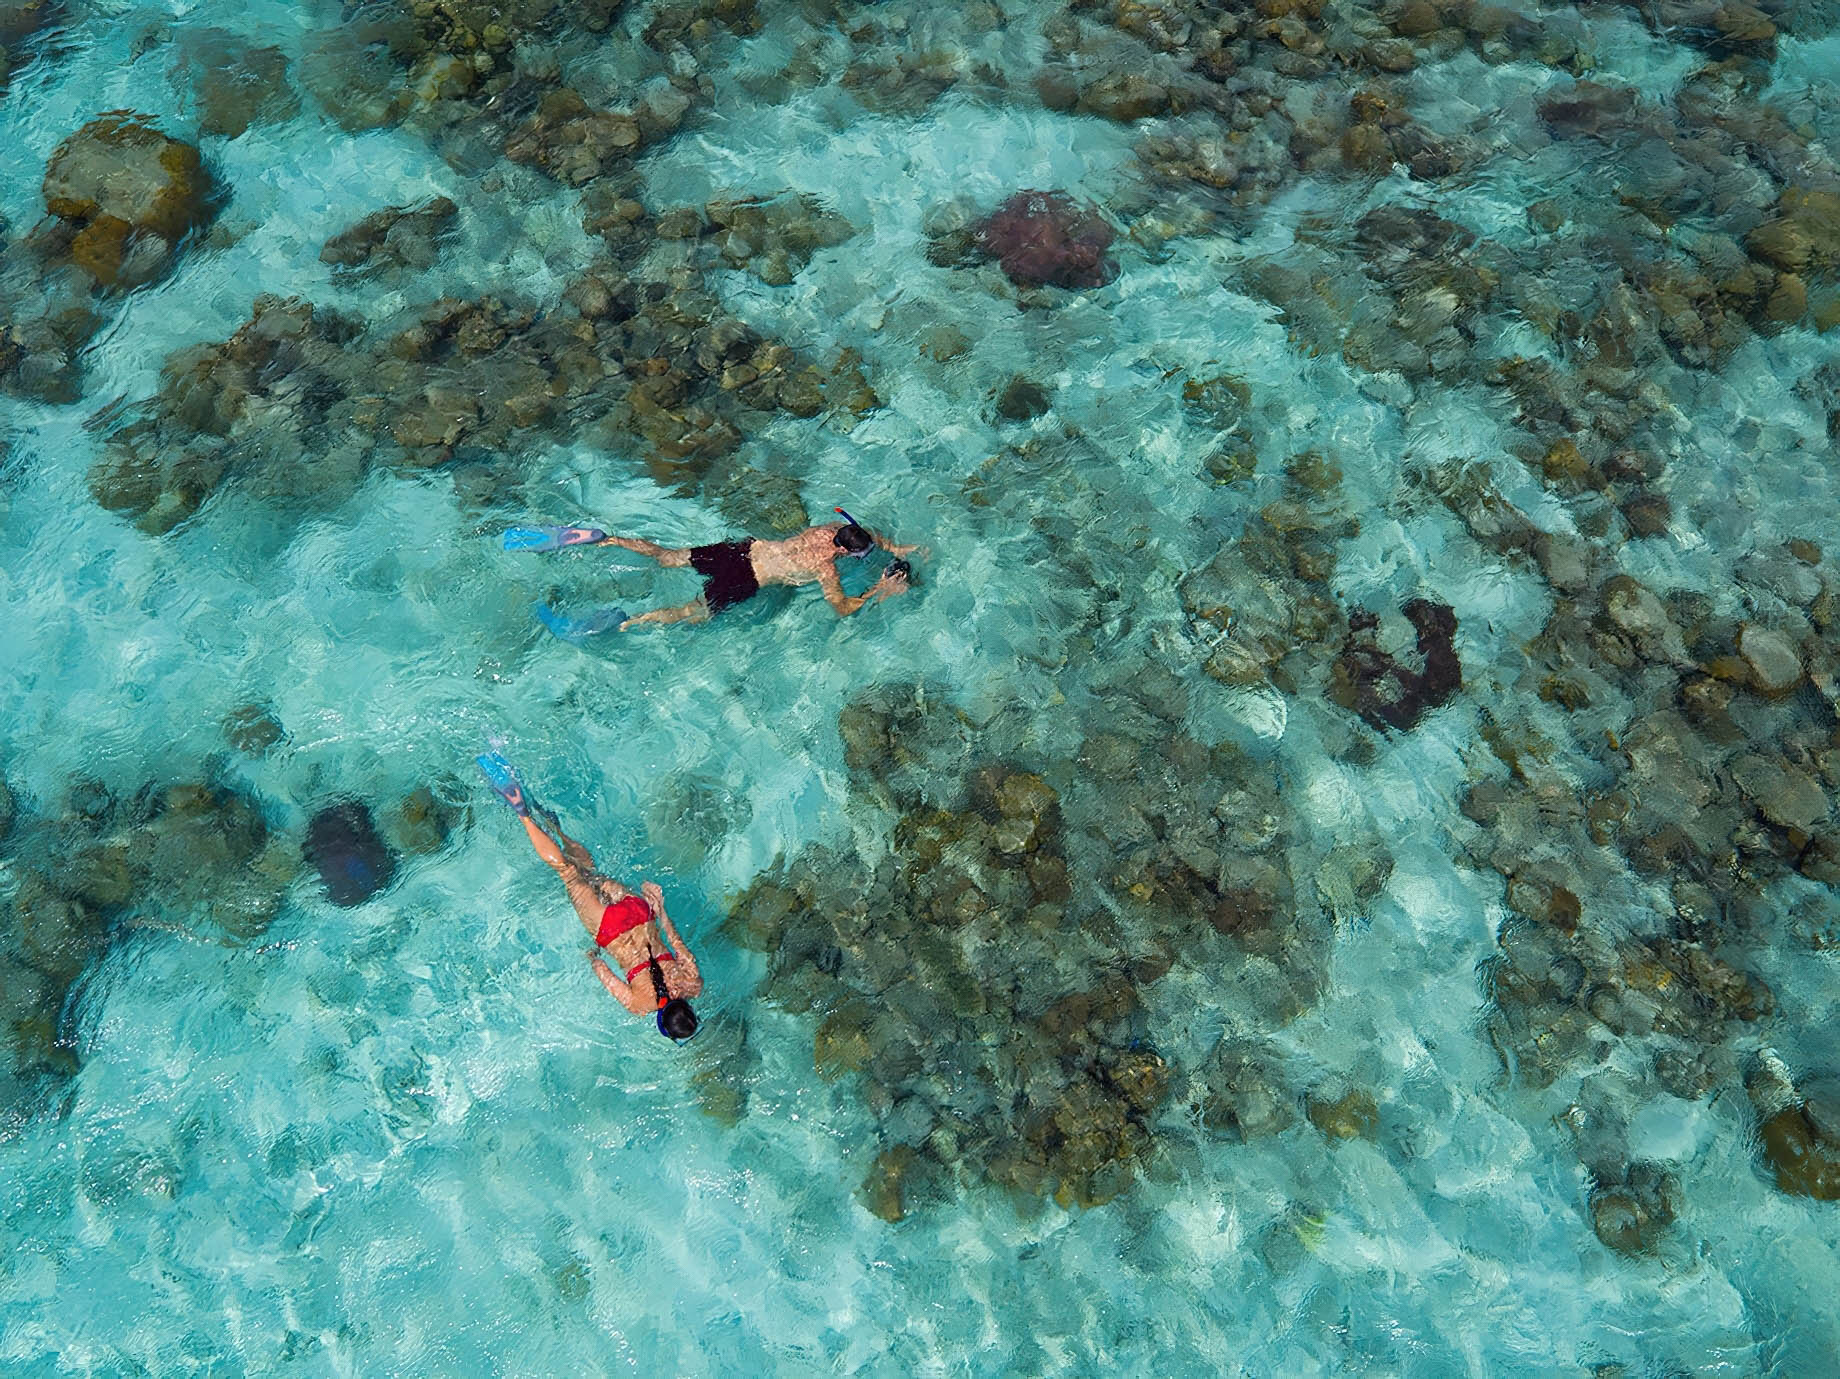 Anantara Kihavah Maldives Villas Resort – Baa Atoll, Maldives – Snorkeling